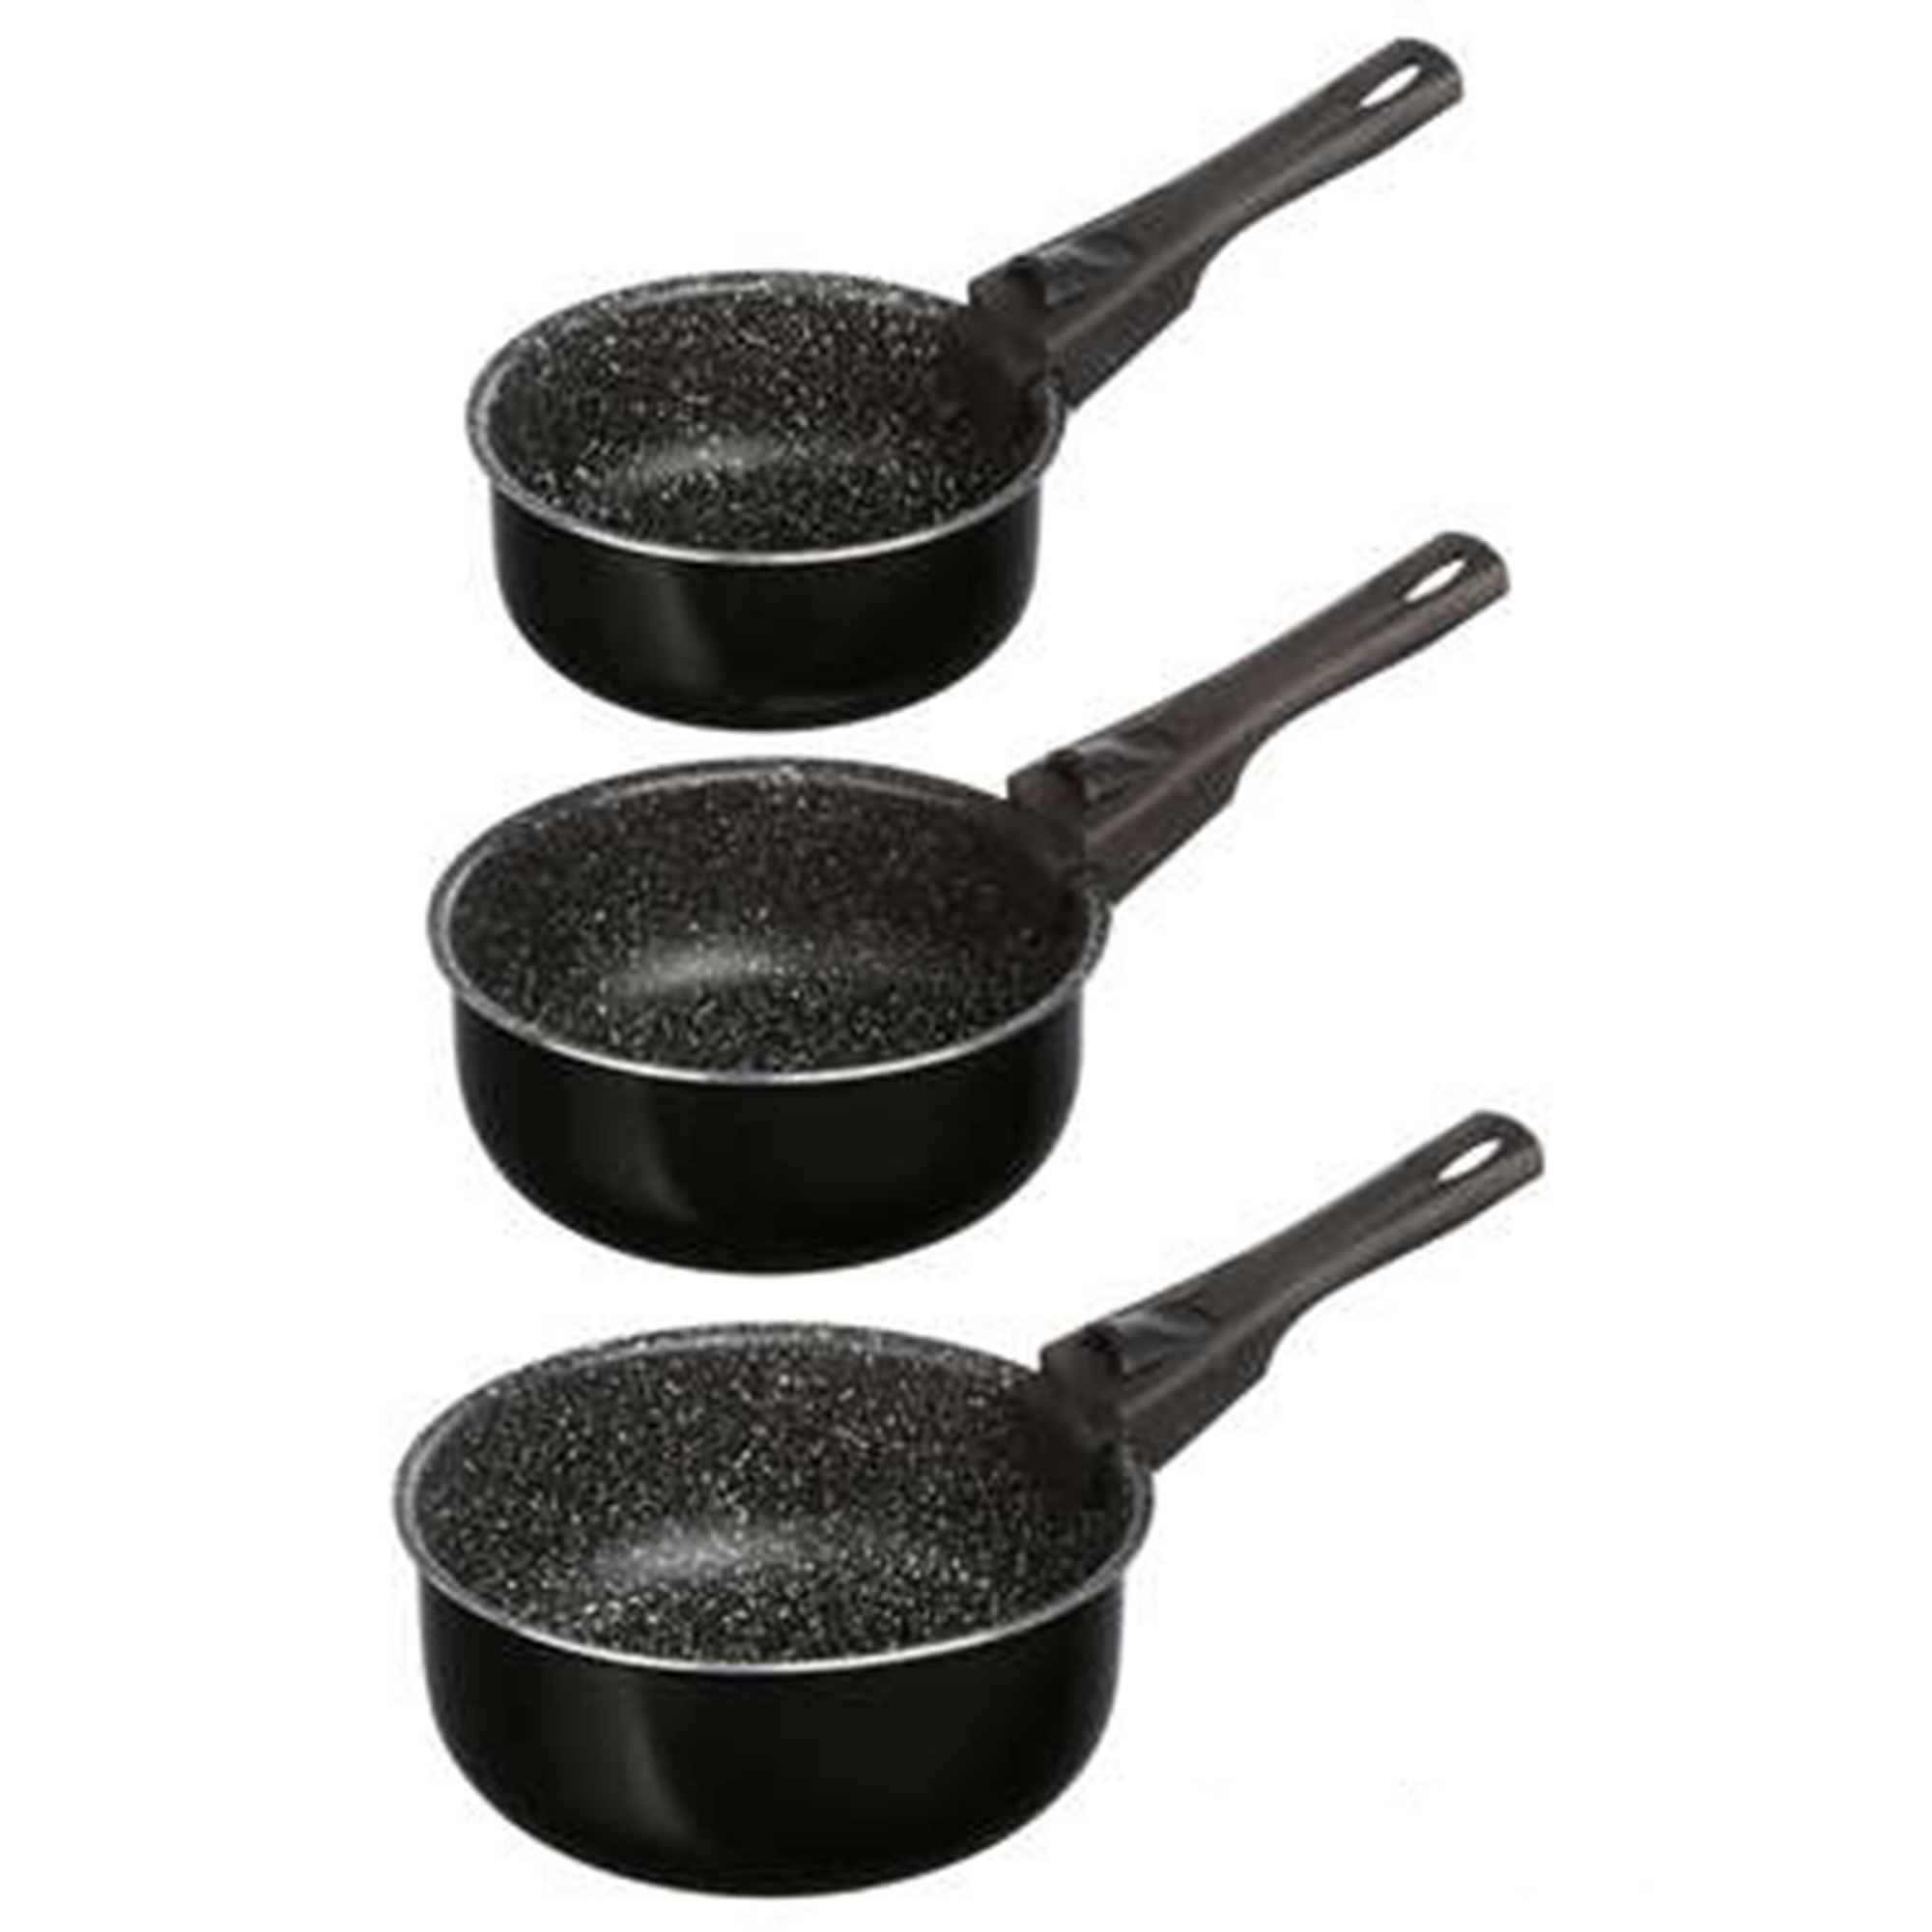 Steelpan-sauspan 3x stuks voor alle kookplaten aluminium zwart 16-18-20 cm